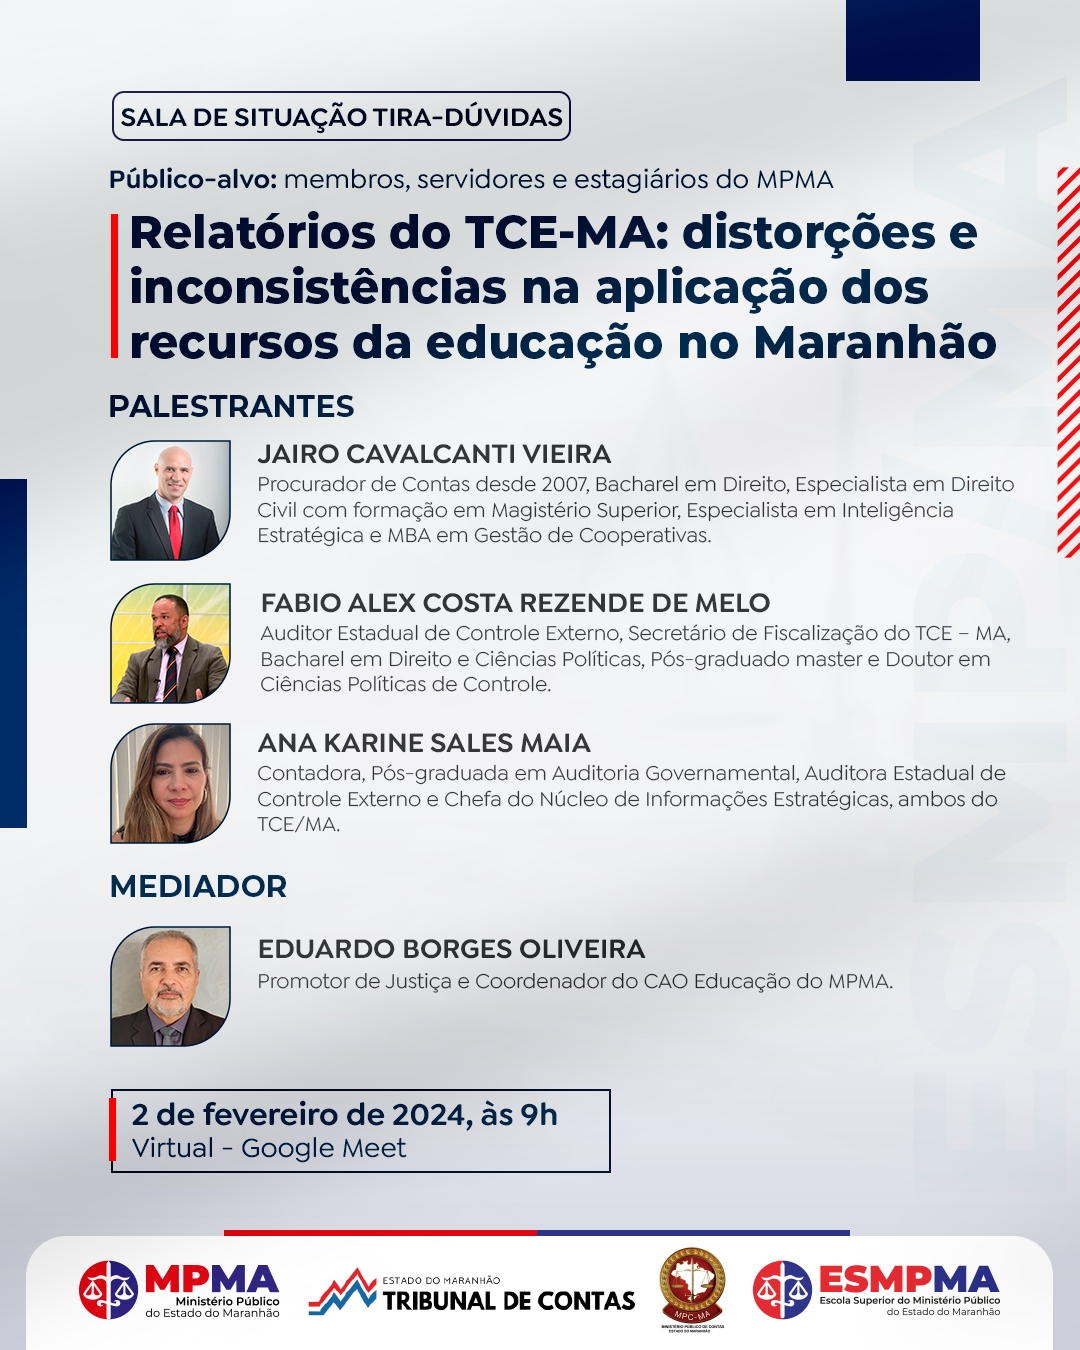 Sala de situação tira-dúvidas "Relatórios do TCE-MA: distorções e inconsistências na aplicação dos recursos da educação no Maranhão"